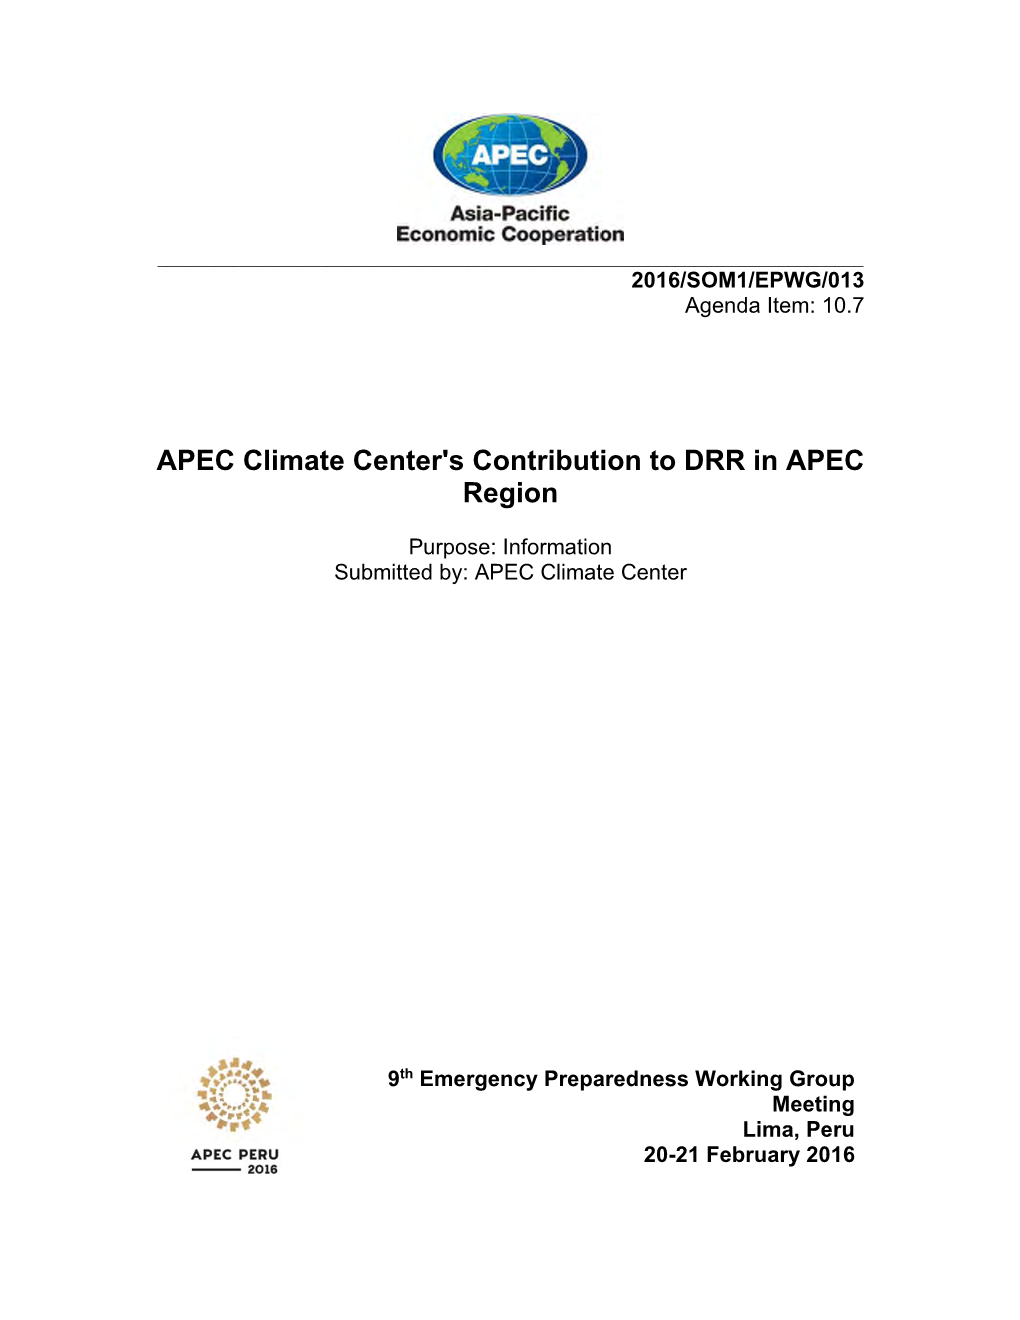 APEC Climate Symposium